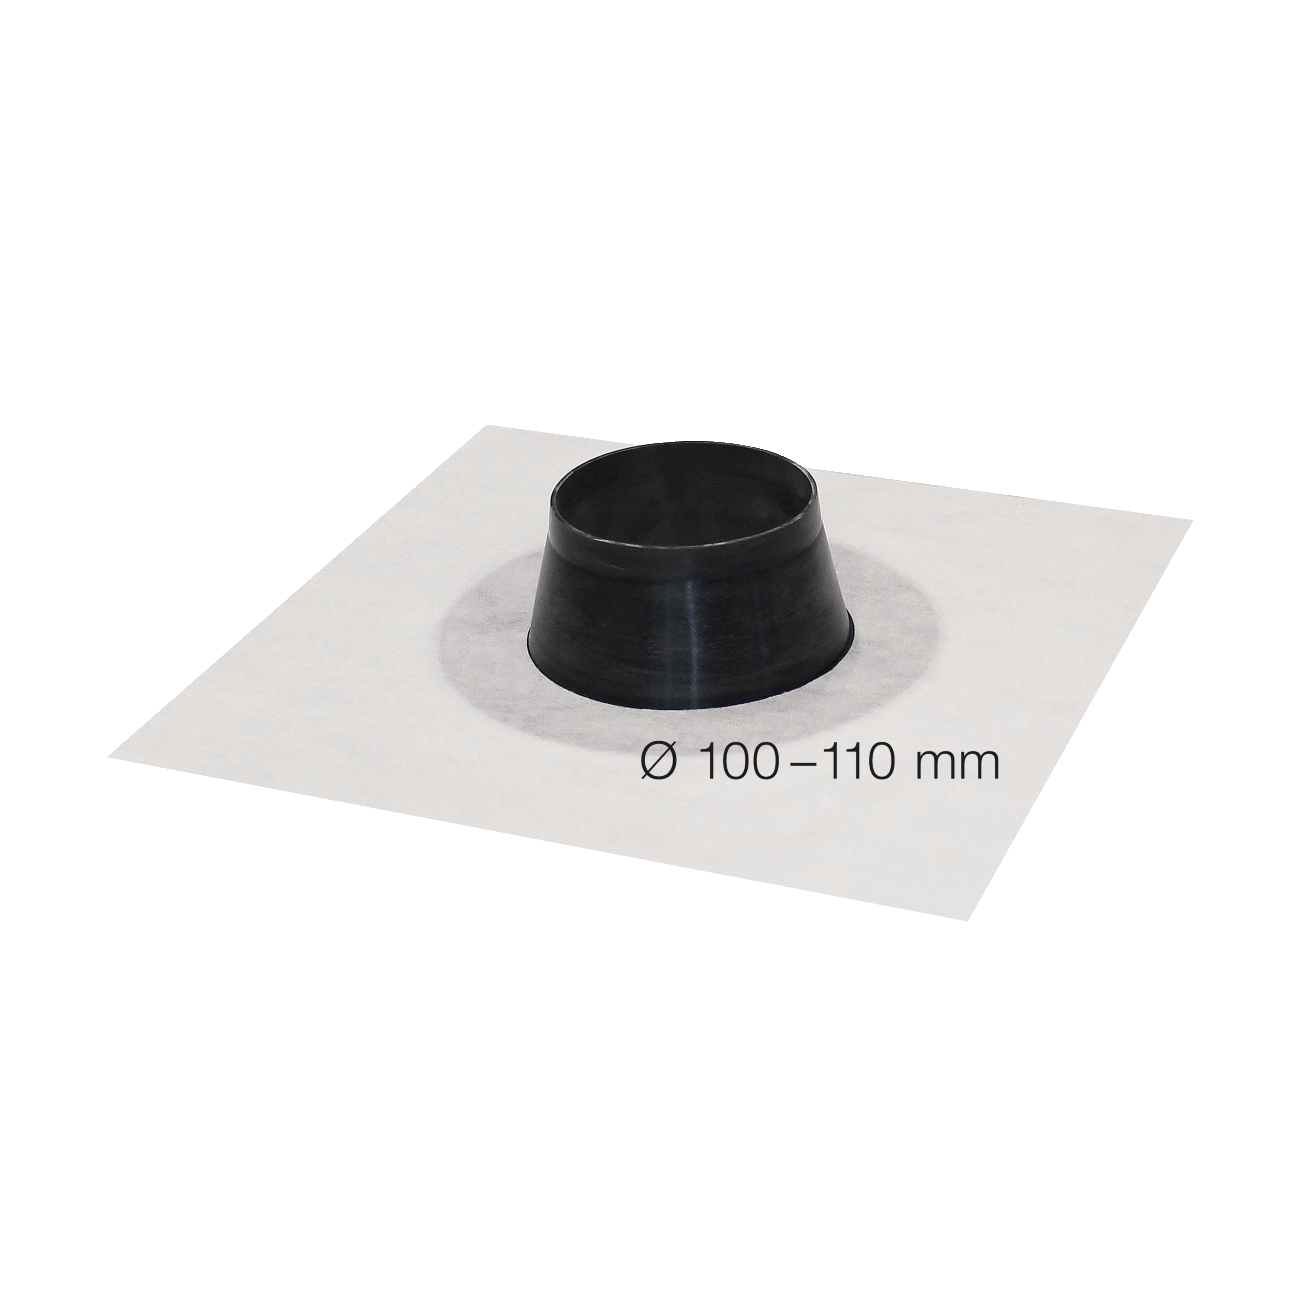 SIGA Fentrim sleeve white diameter 100-110mmm, for pipe penetration